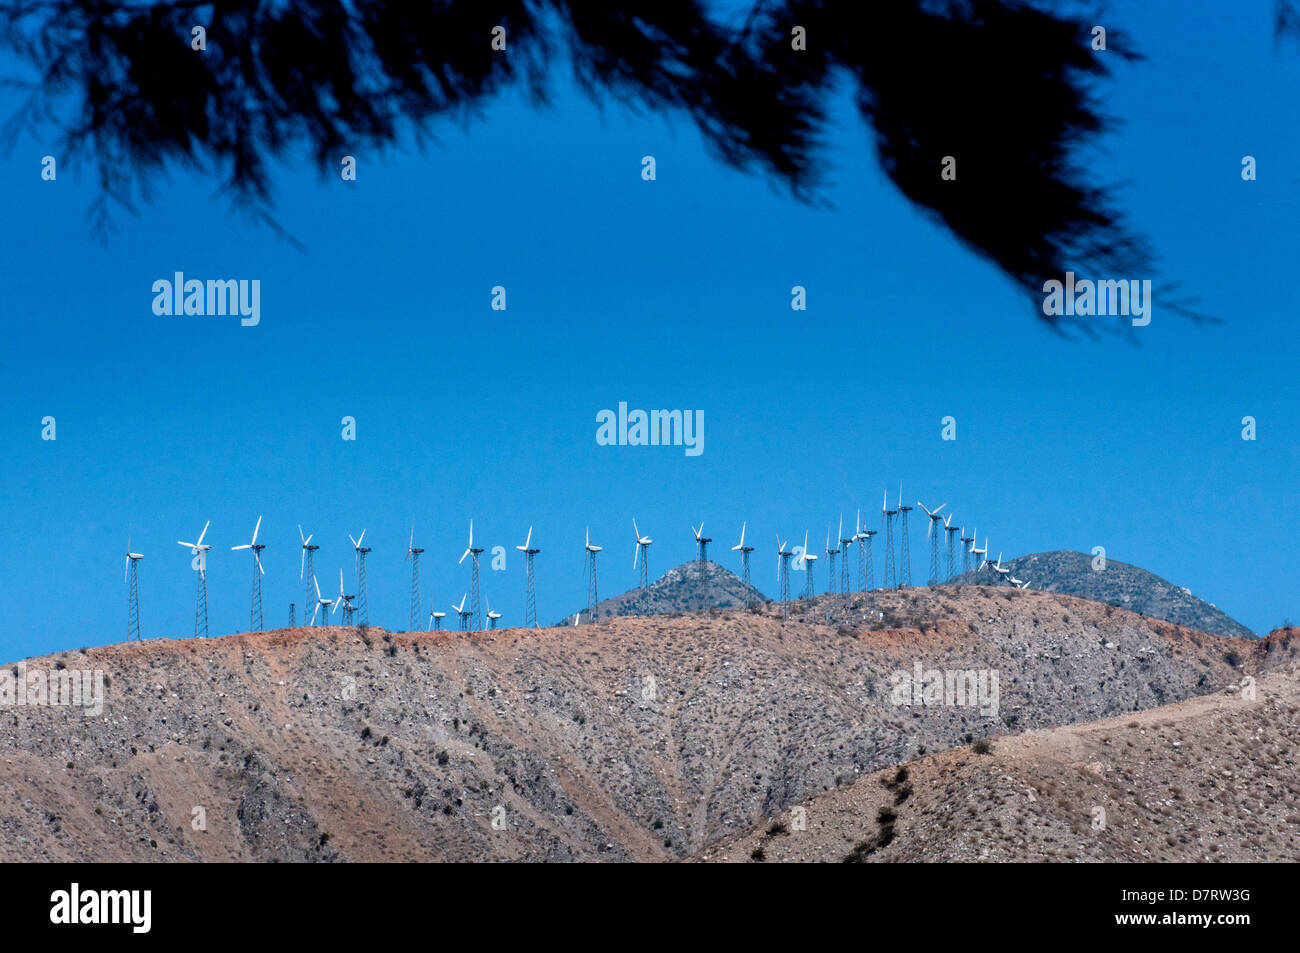 Éoliennes sur l'Interstate 10, près de Palm Springs, en Californie. Banque D'Images